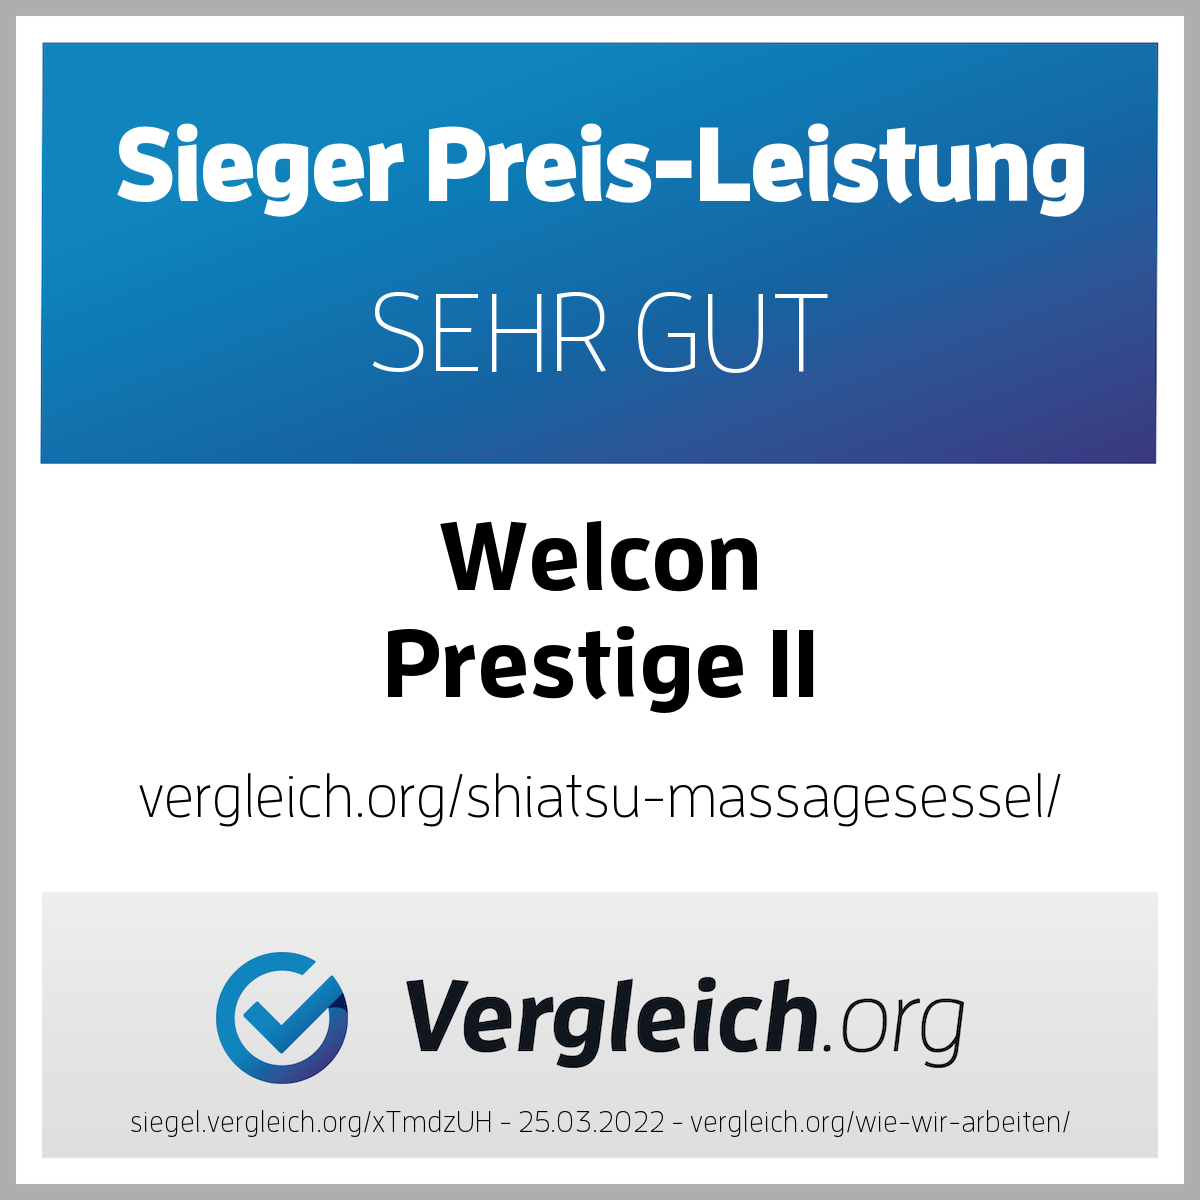 Massagesessel WELCON Prestige II in schwarz / weiß